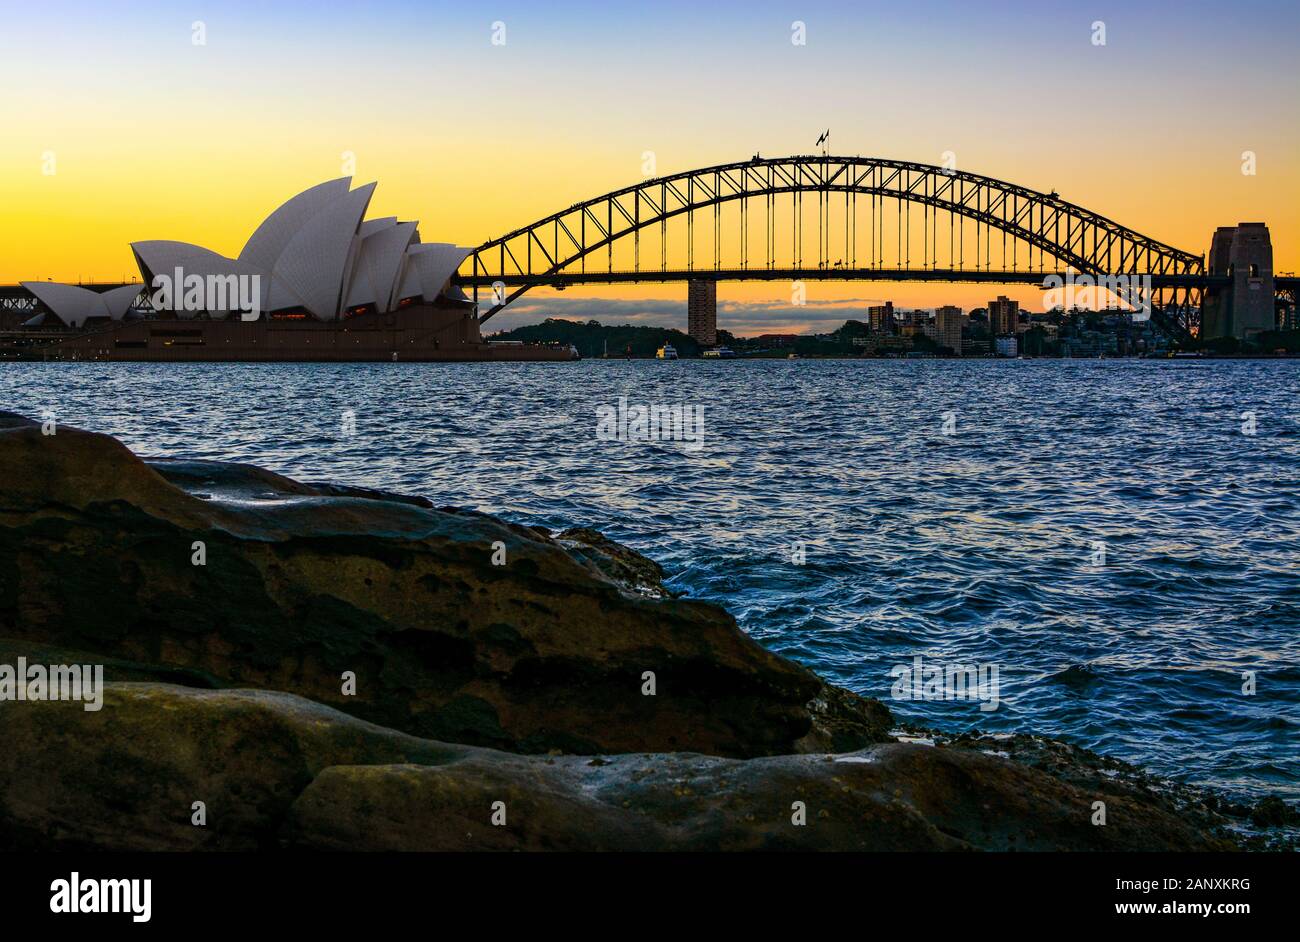 Sydney, AUSTRALIEN - 10. MÄRZ 2018 - Sydney Opera House und Harbour Bridge, die Wahrzeichen der Stadt, von der natürlichen Küstenlinie bei Sonnenuntergang aus gesehen Stockfoto